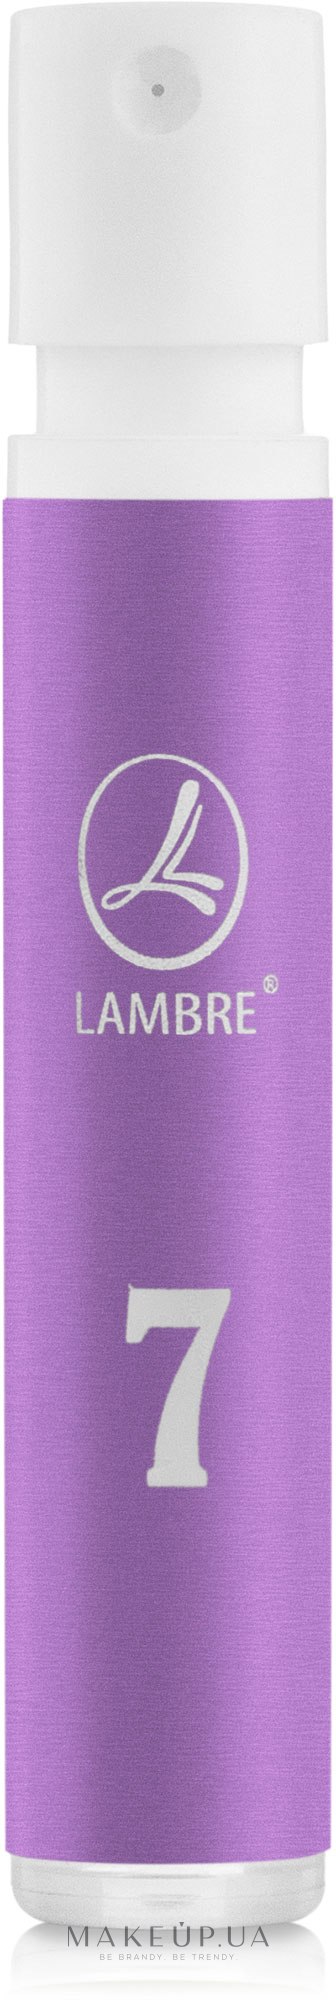 Lambre № 7 - Духи (пробник) — фото 1.2ml